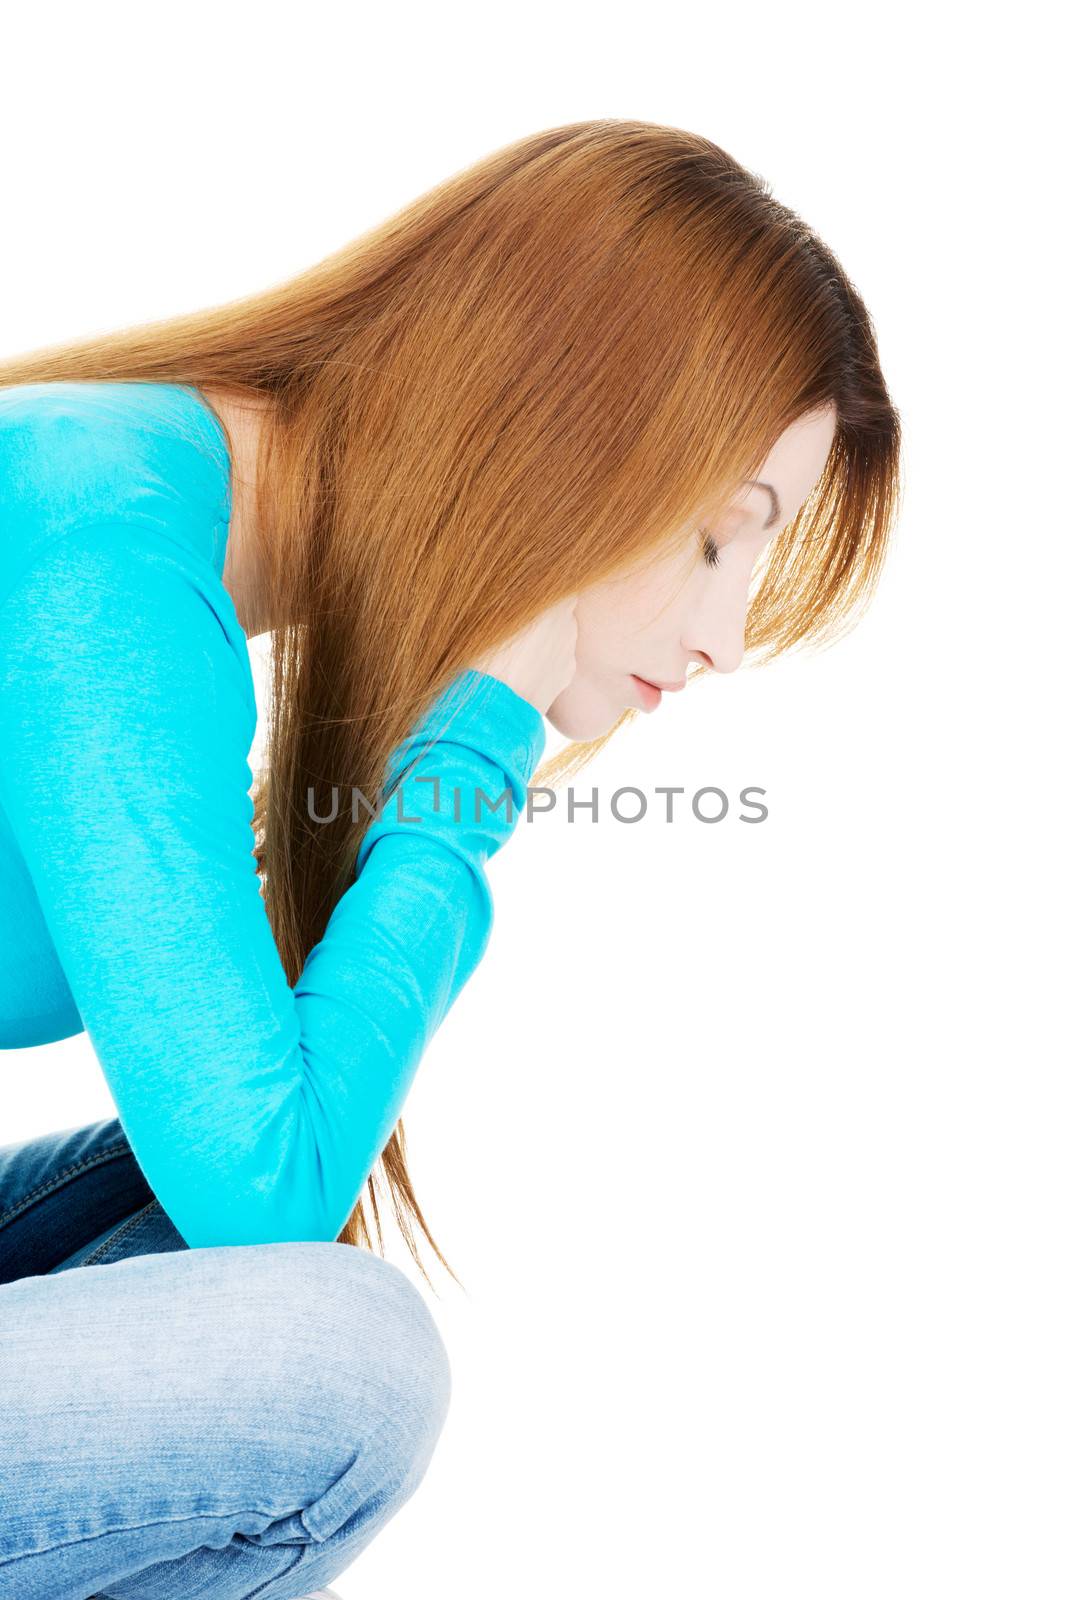 Sad depressed woman portrait by BDS